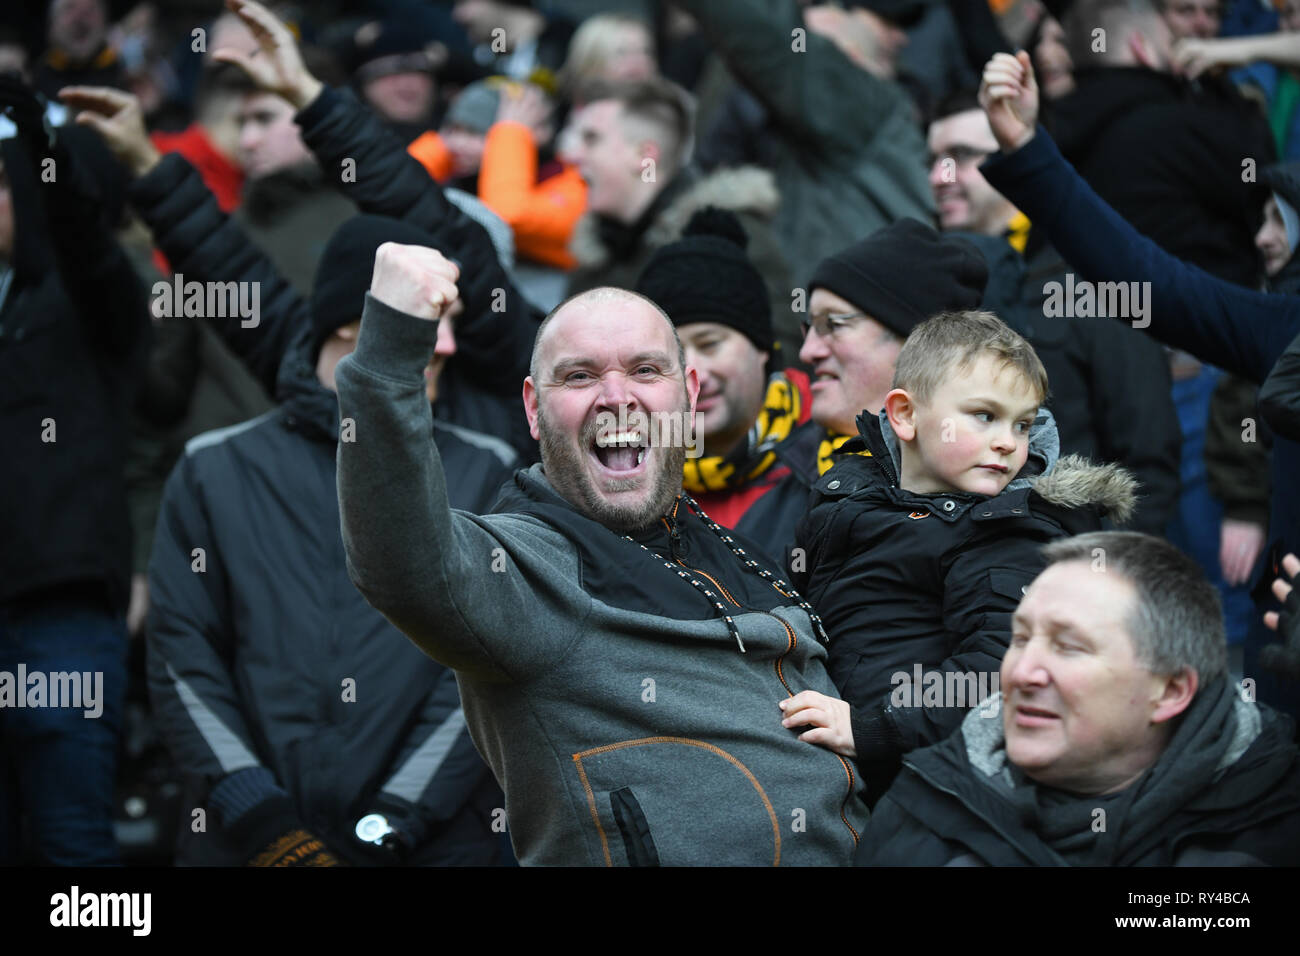 Les supporters de football père et fils célébrer au match de football Banque D'Images